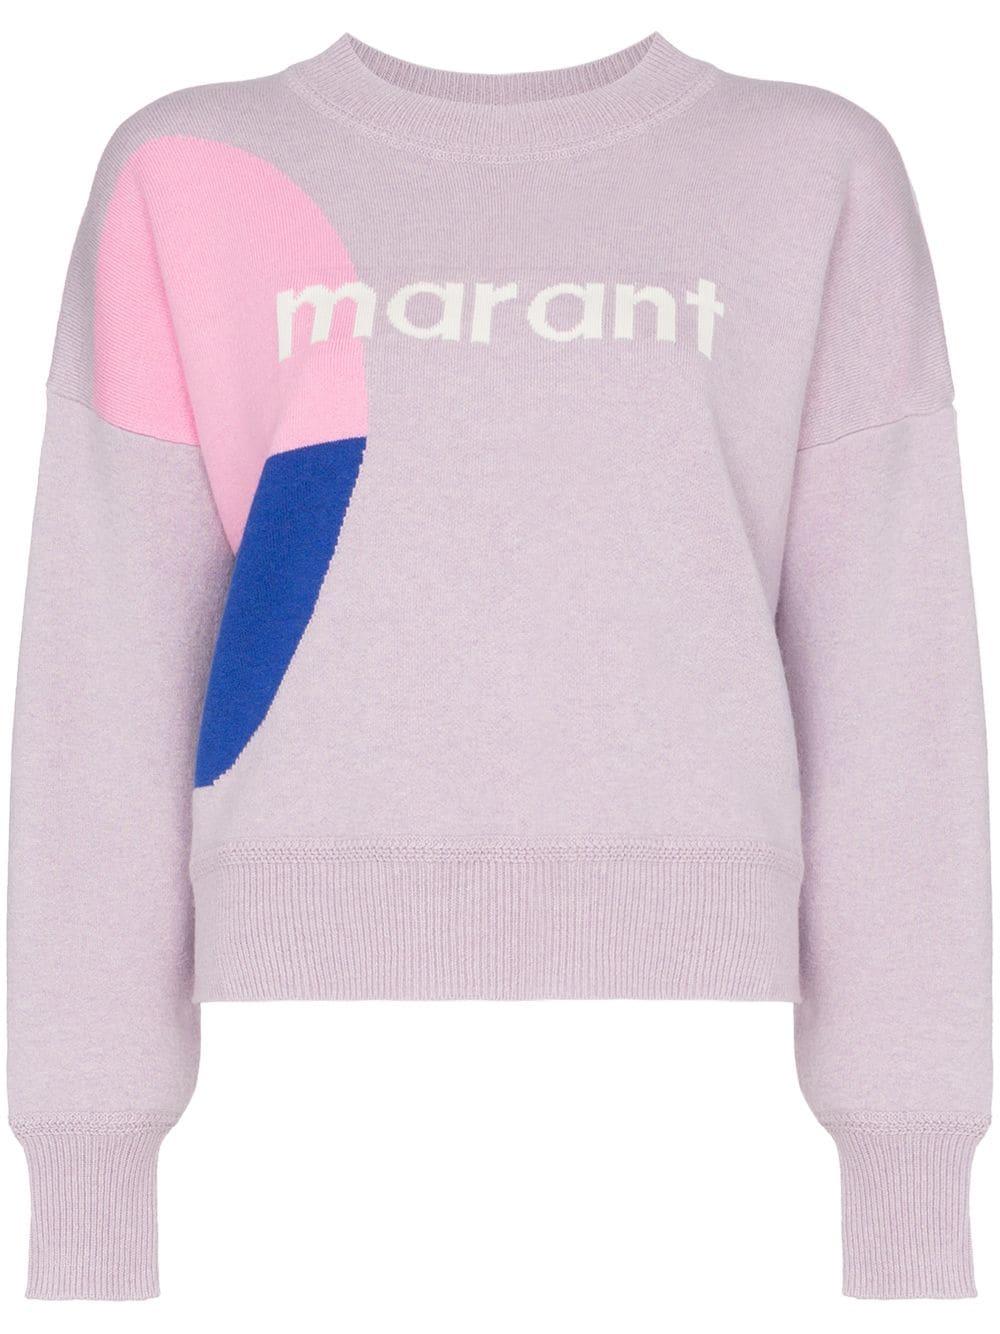 isabel marant korbin sweater,www.macj.com.br